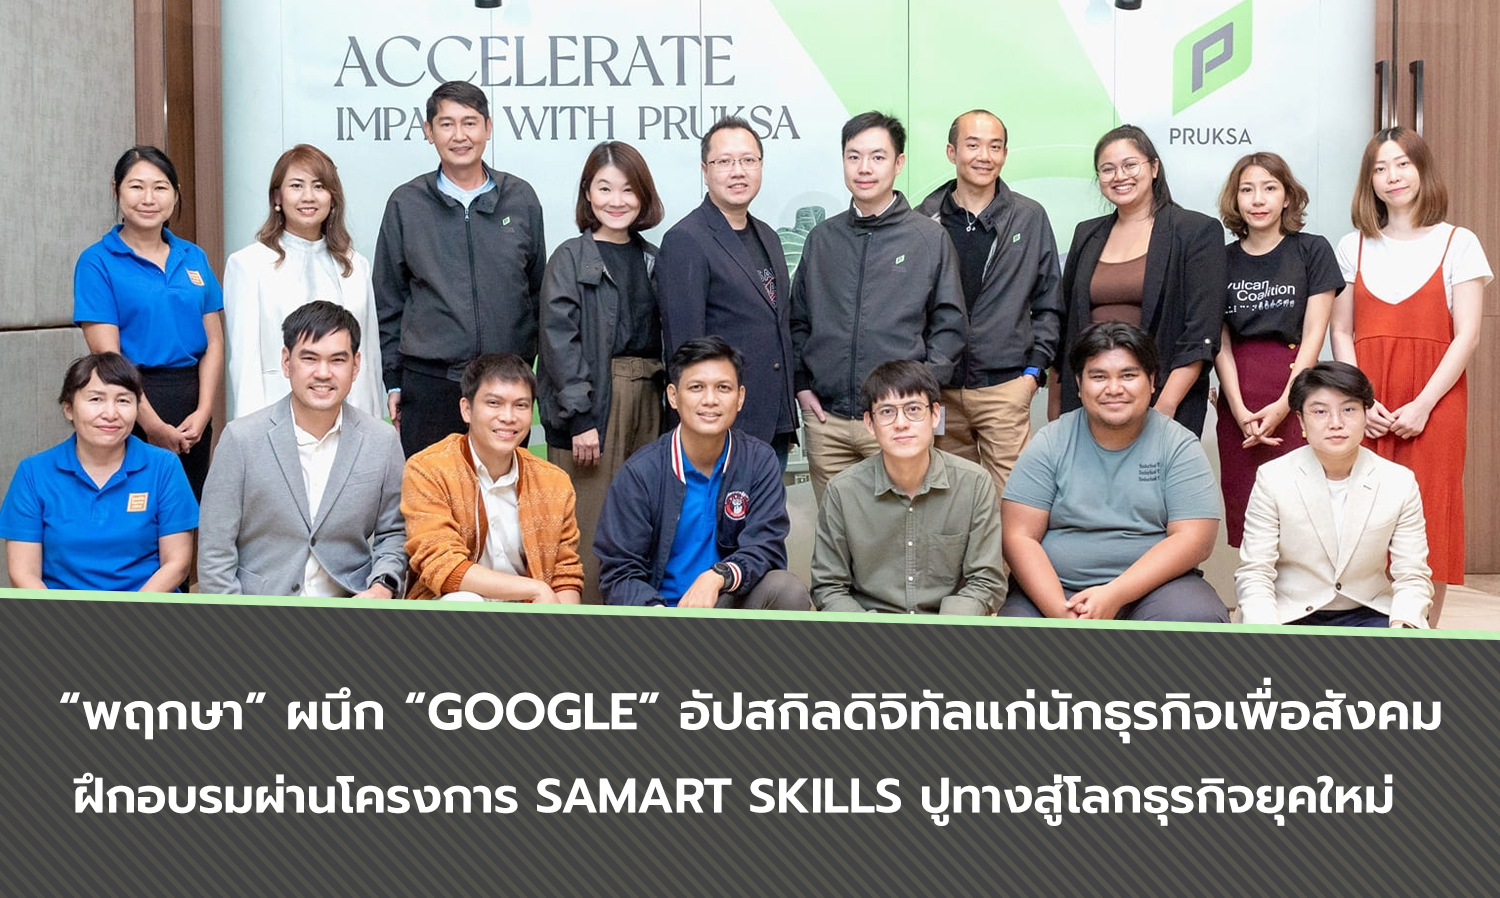 “พฤกษา” ผนึก “Google” อัปสกิลดิจิทัลแก่นักธุรกิจเพื่อสังคม  ฝึกอบรมผ่านโครงการ Samart Skills ปูทางสู่โลกธุรกิจยุคใหม่  